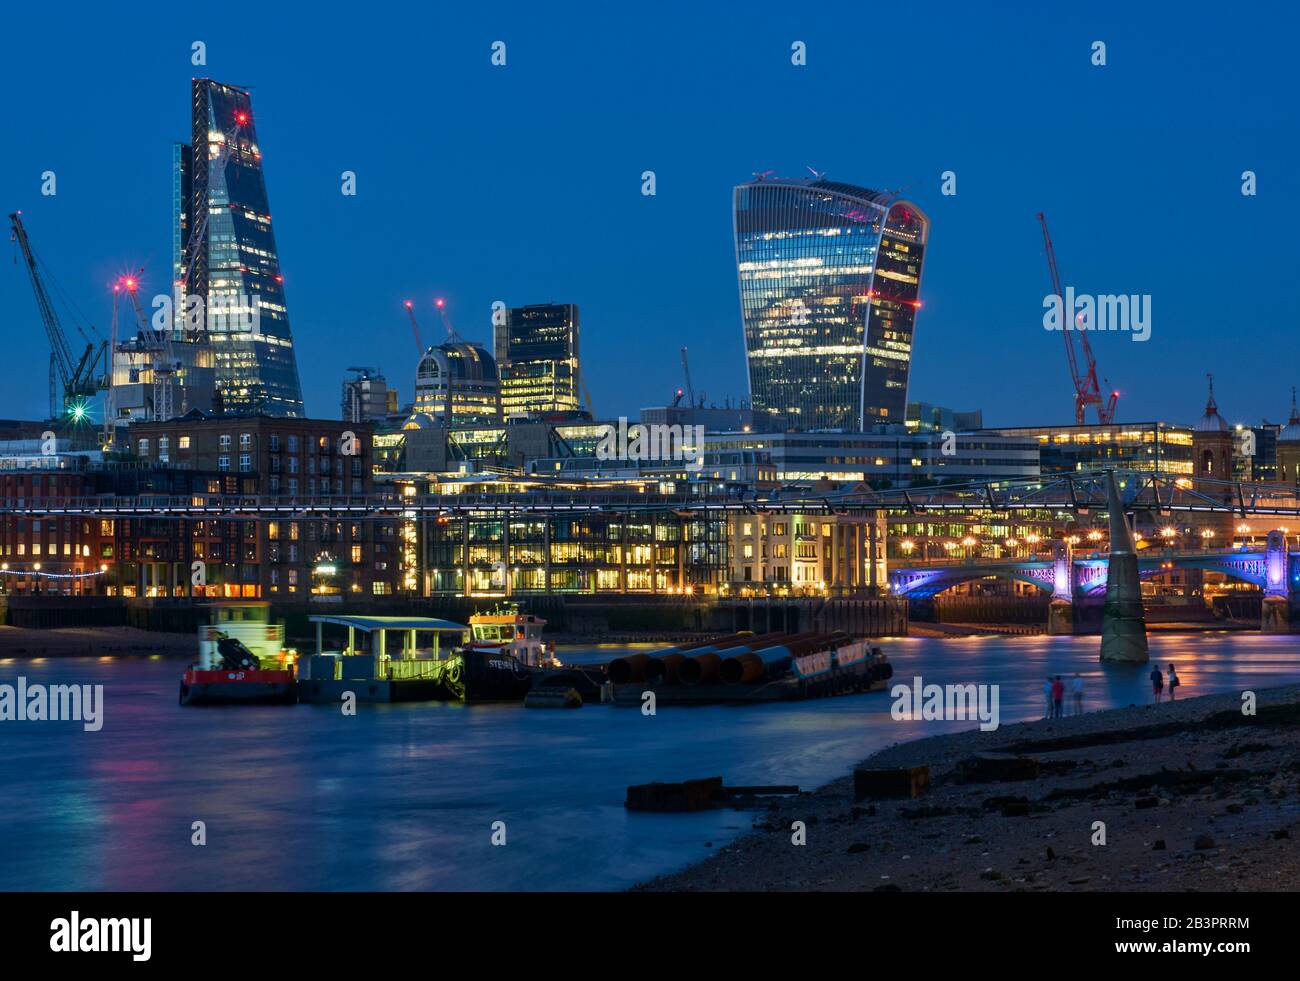 Bâtiments de la ville de Londres la nuit, vue de la rive sud, avec le pont Millennium et la tour Talkie Walkie Banque D'Images